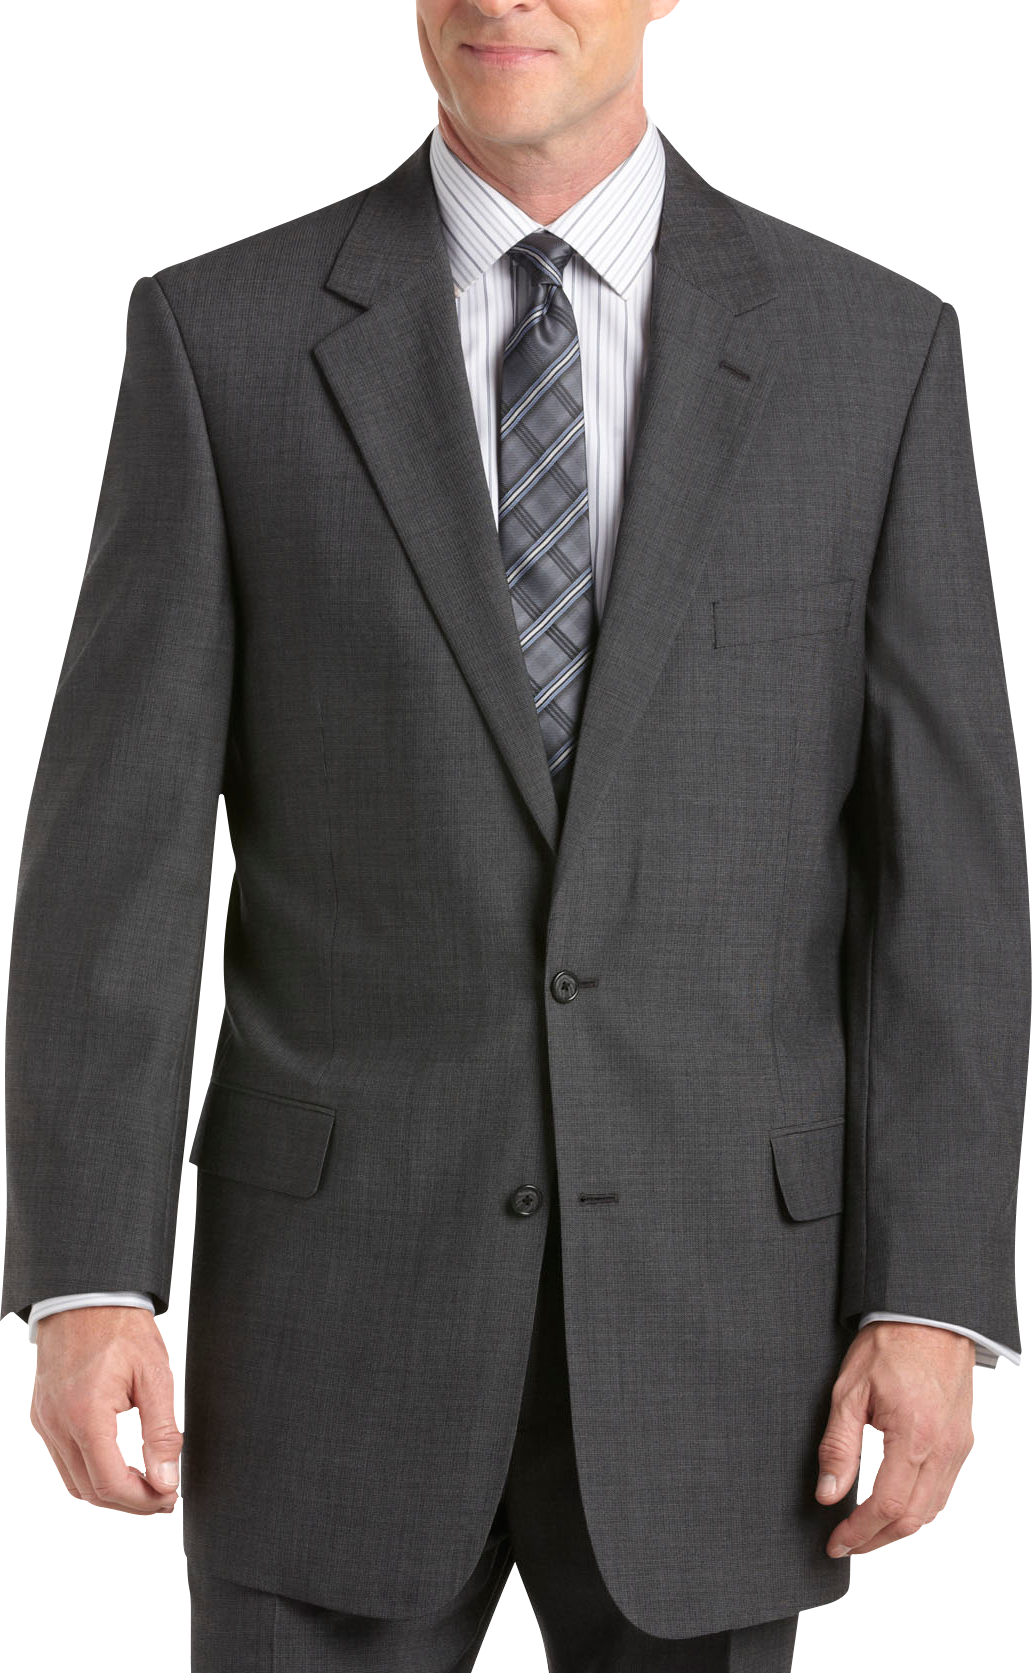 Mens Gray Suit | Men's Wearhouse | Male Gray Suit, Gentlemen Gray Suit